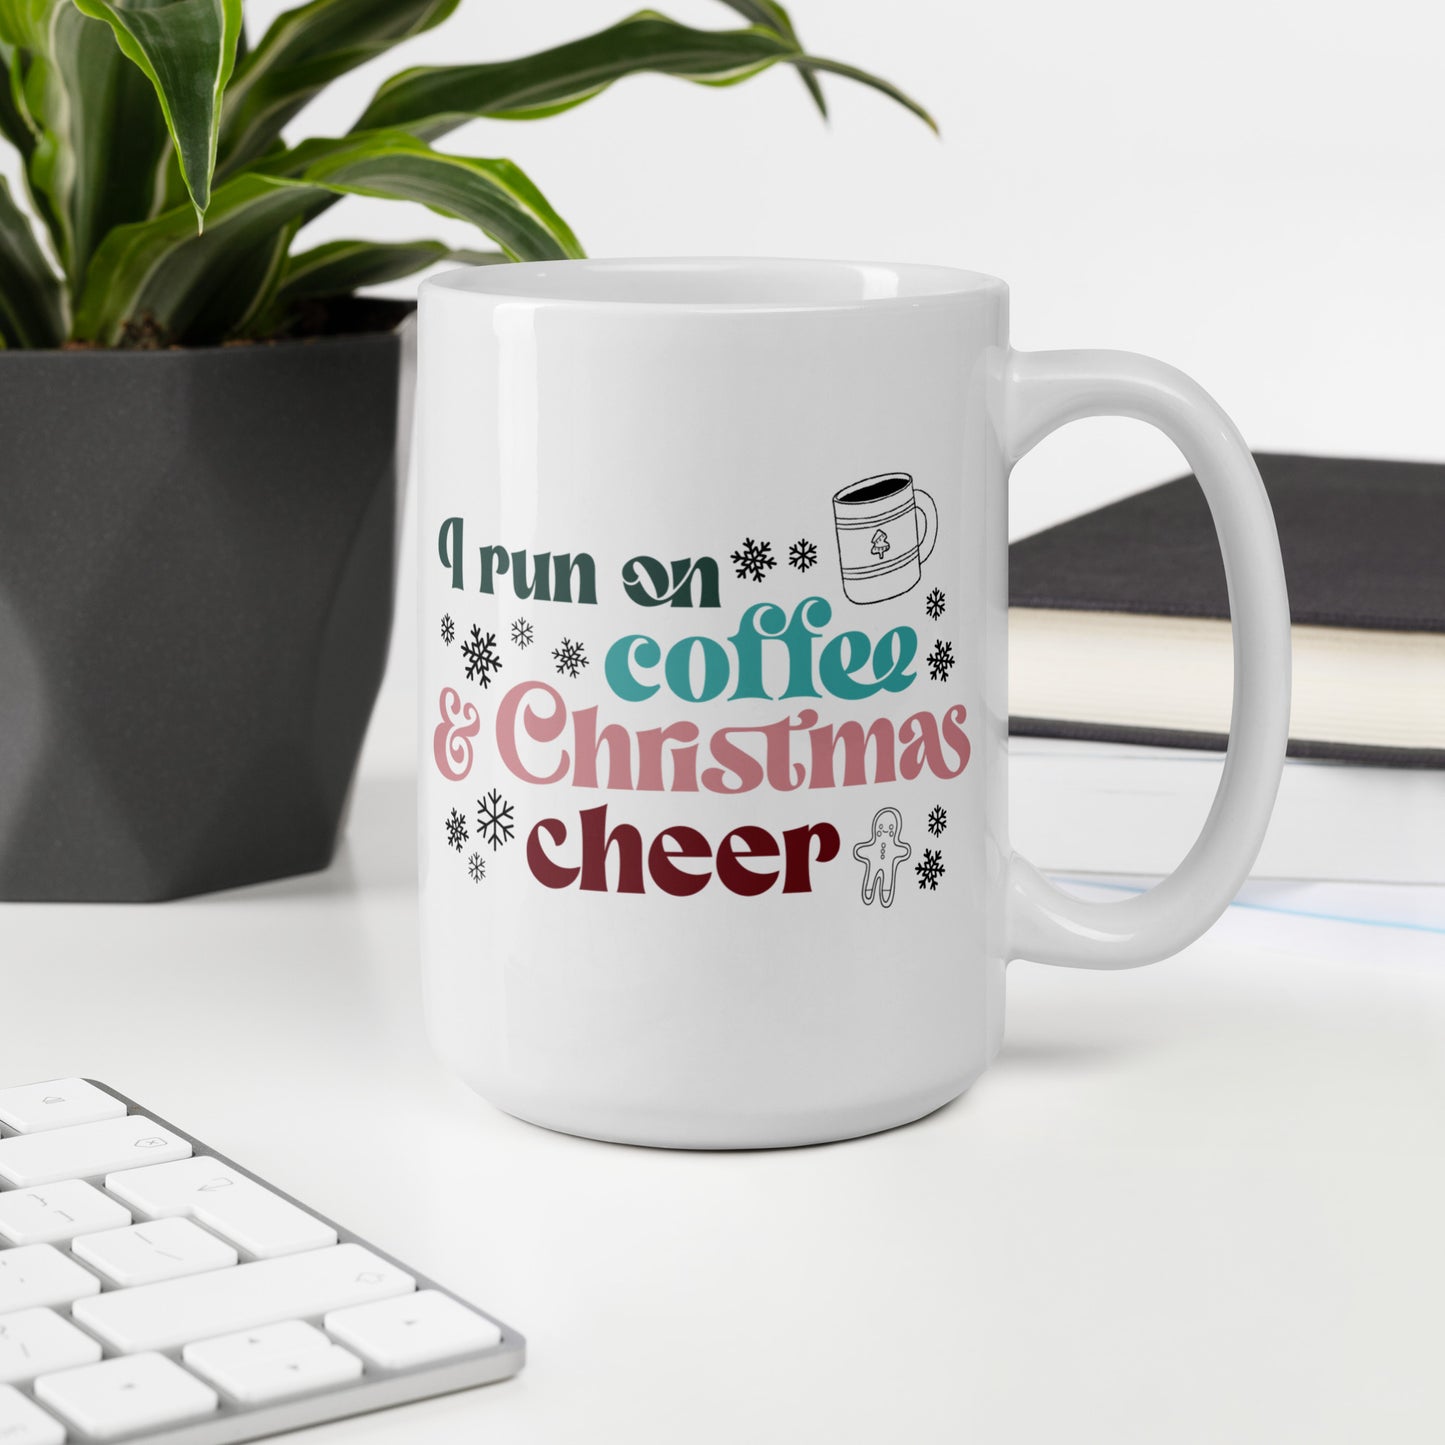 Coffee & Christmas Cheer Coffee Mug